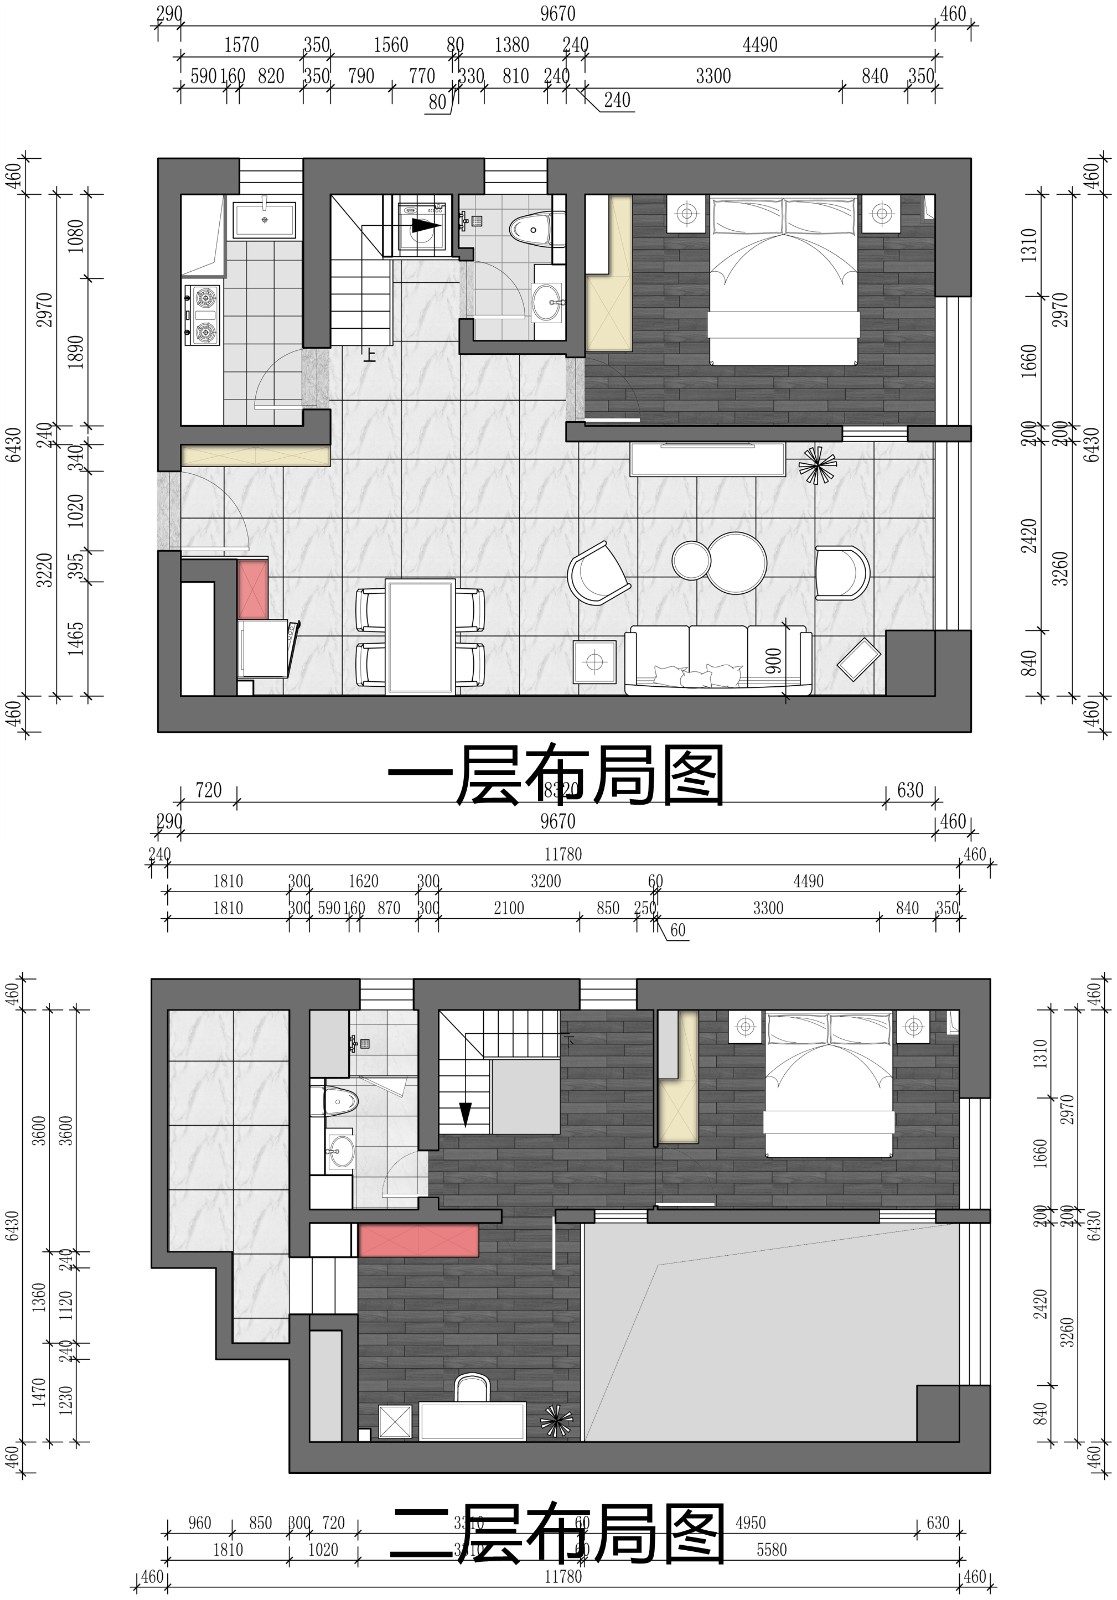 200现代Loft装修效果图,珠江四季城|现代风格装修案例效果图-美广网(图1)